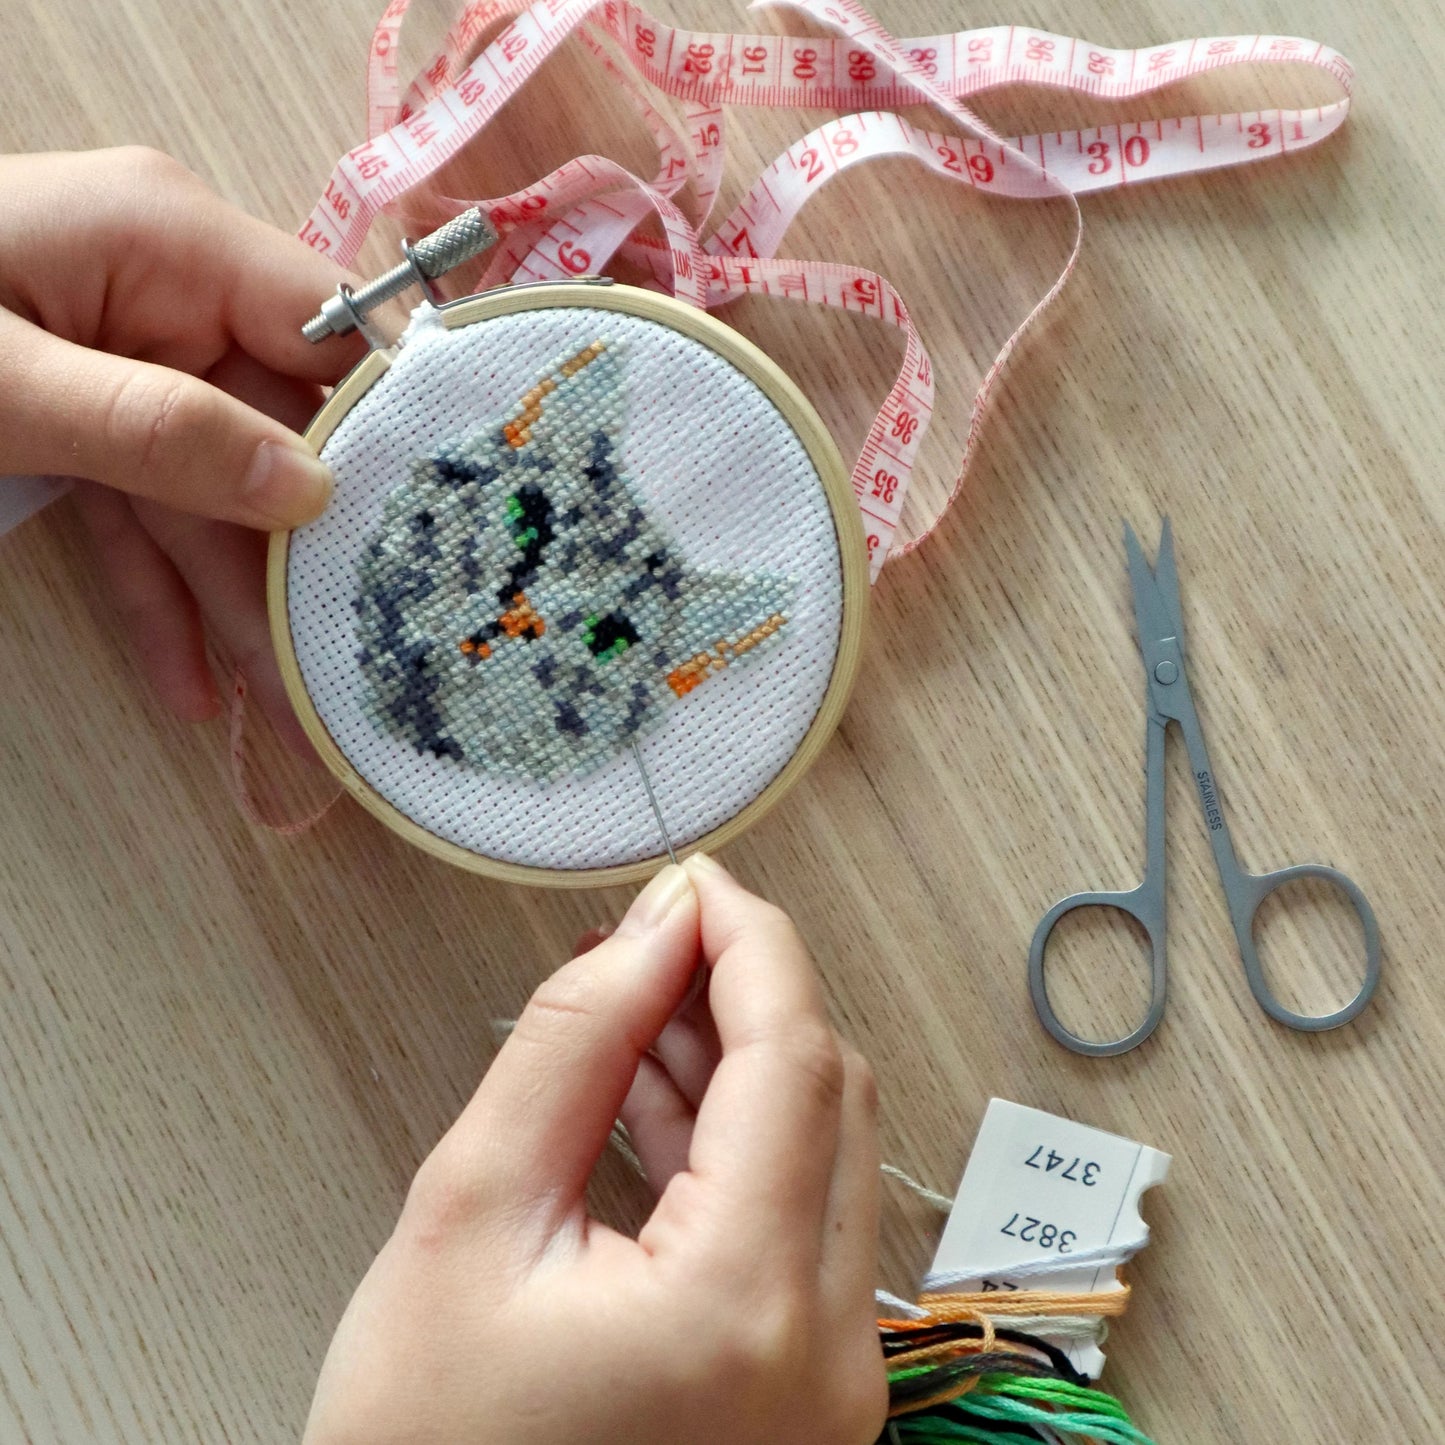 Mini Cat Embroidery Kit